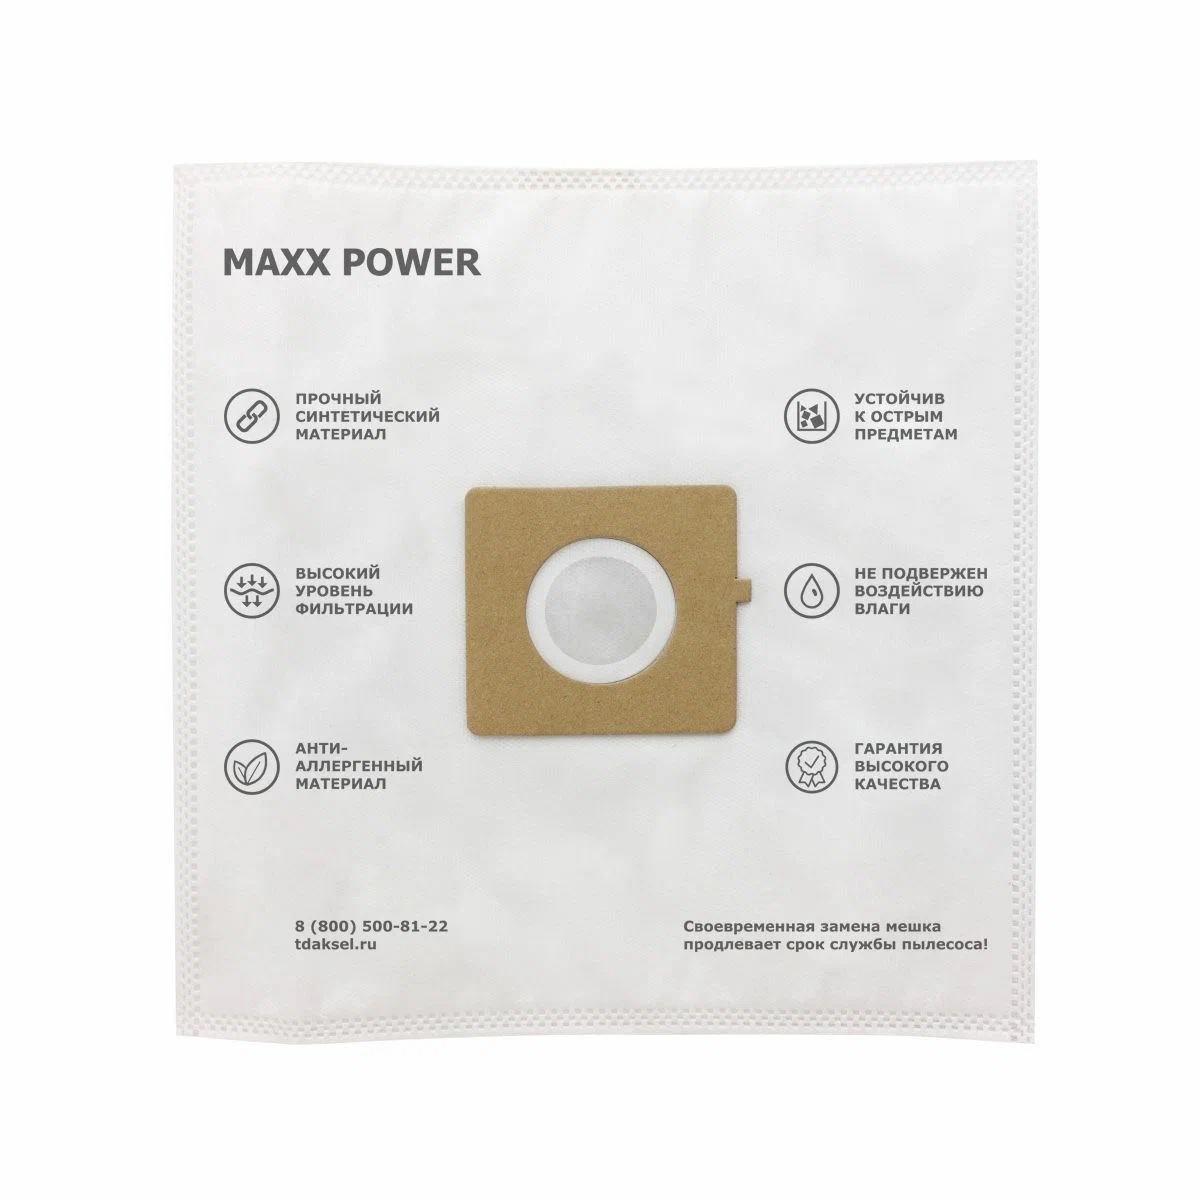 Пылесборник MAXX POWER для LG, EVGO, POLAR